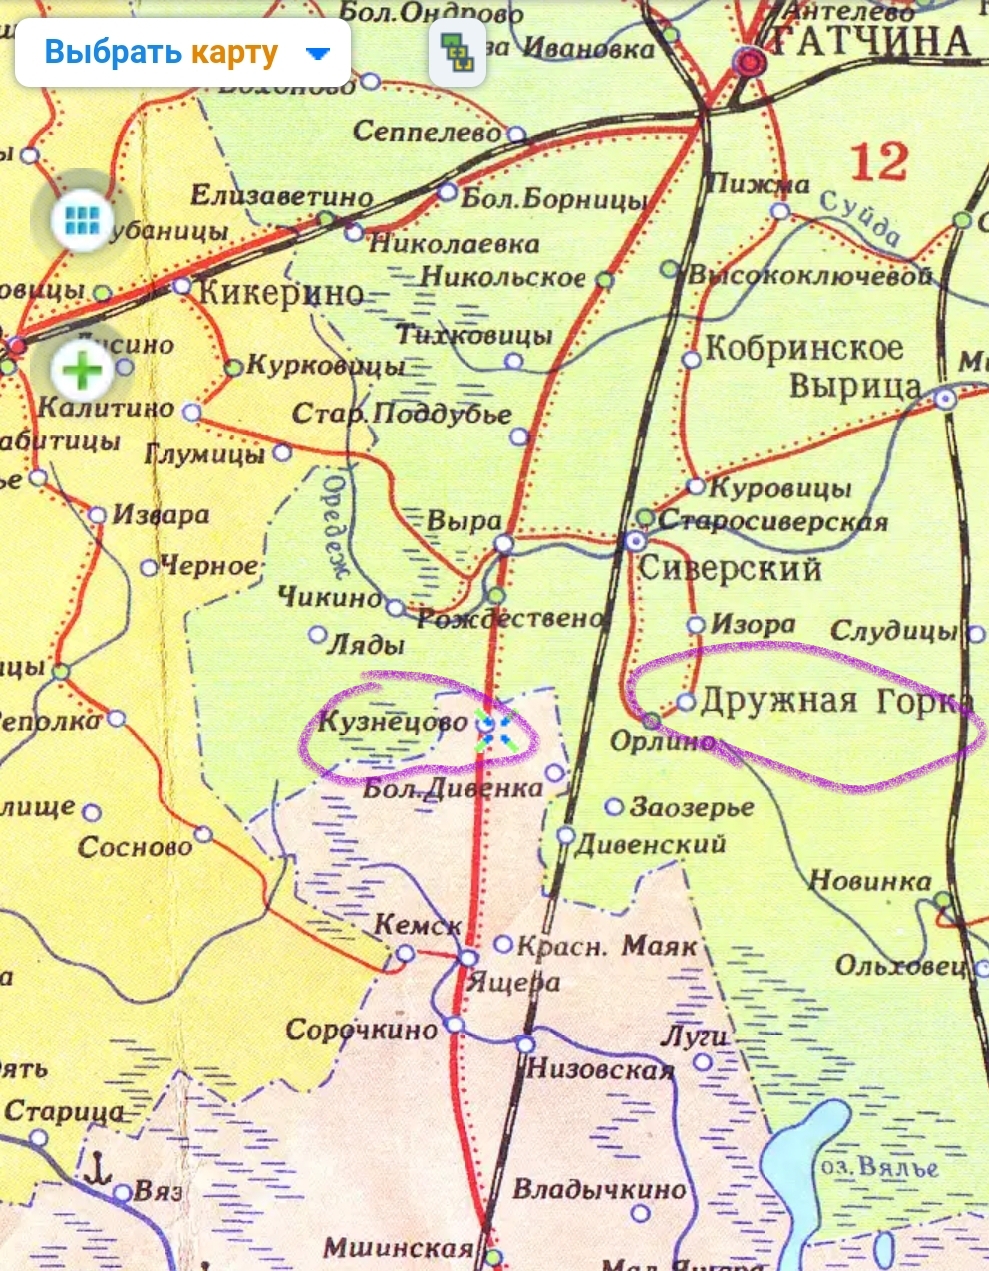 Карта гатчинского района ленинградской области подробная с названиями деревень улиц и номерами домов